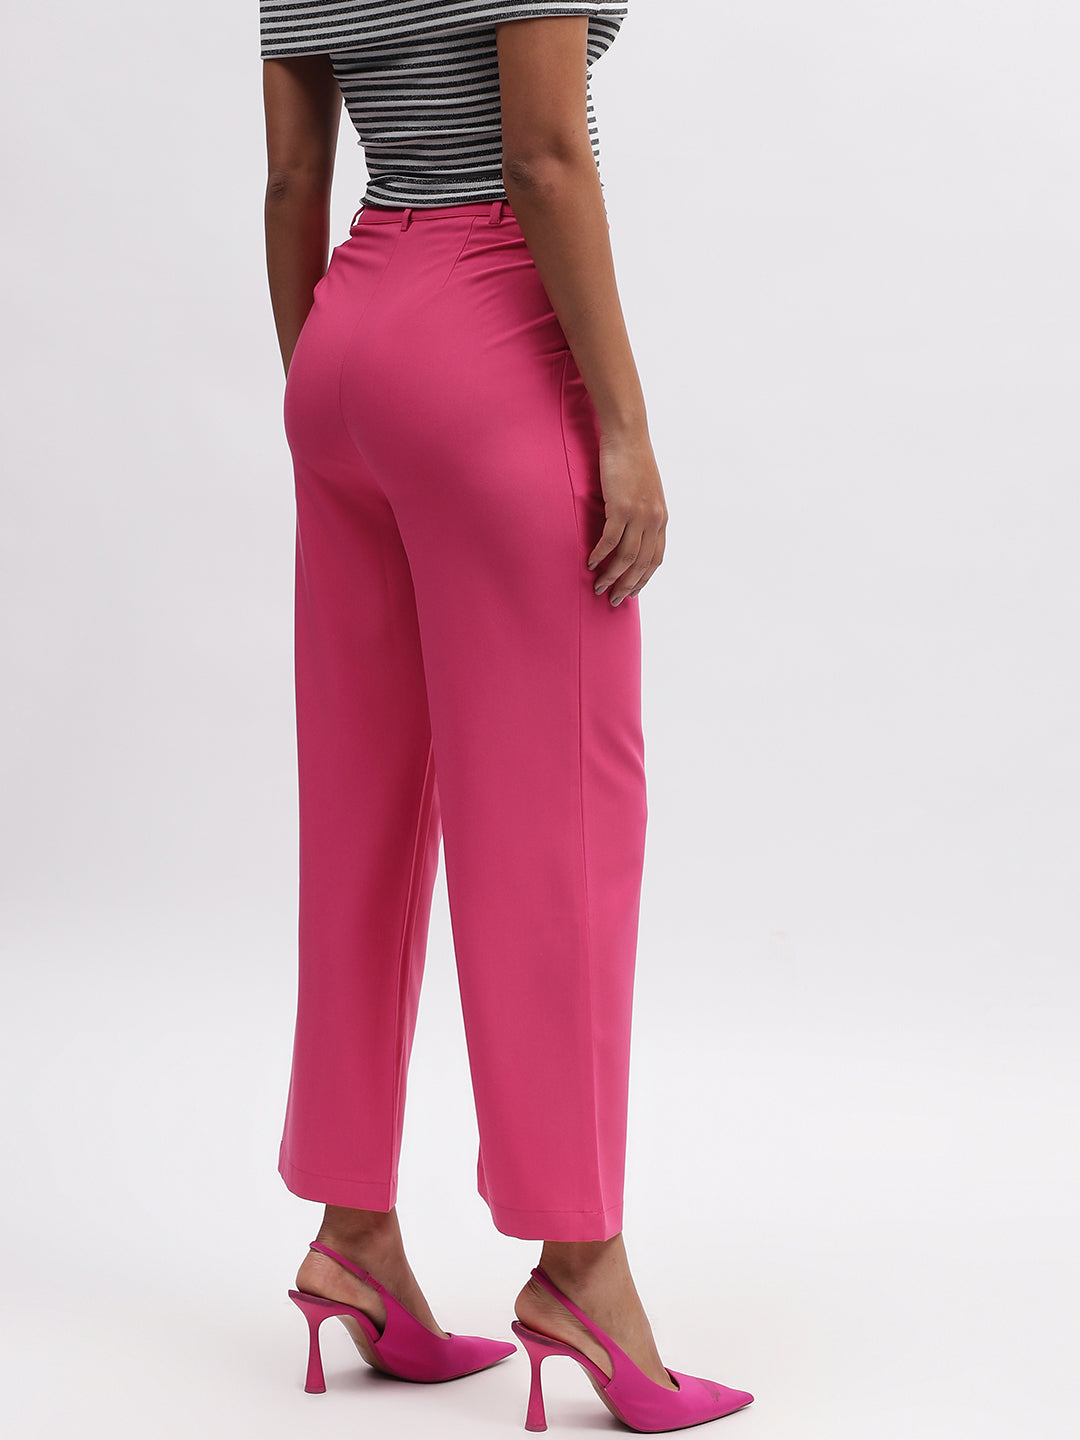 Buy Premium Trouser For Women Online